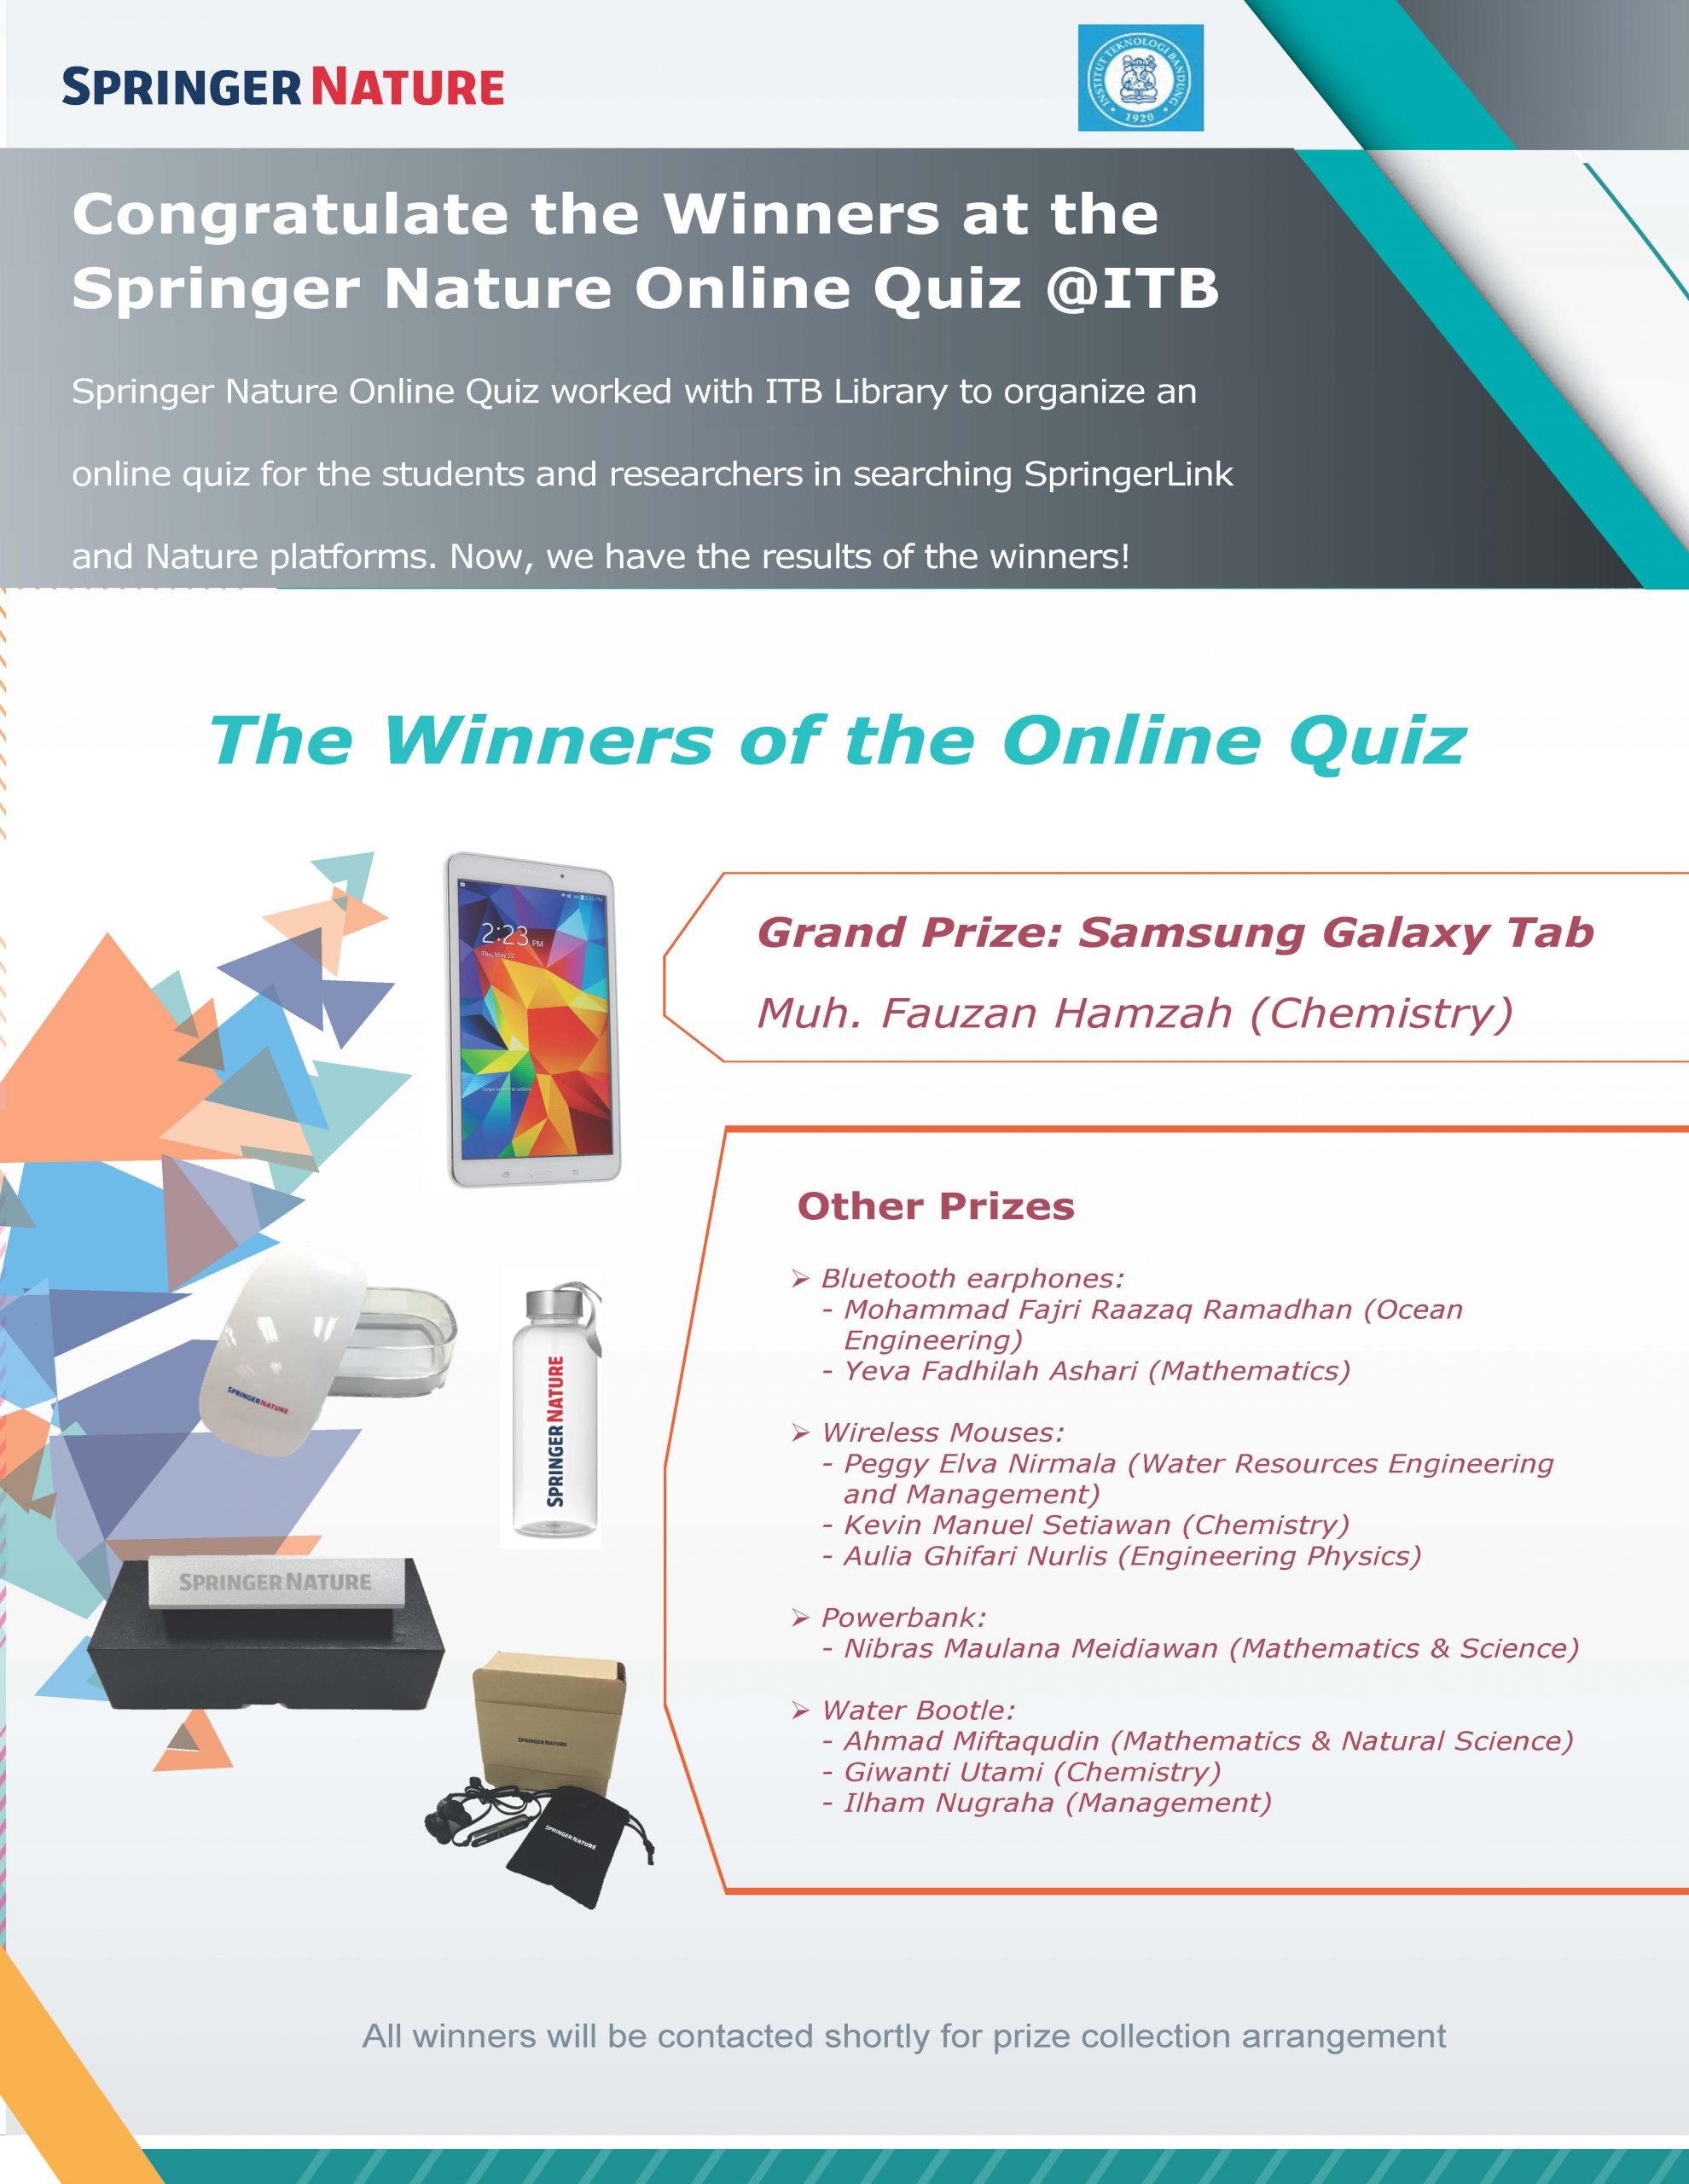 Pemenang Springer Nature Online Quiz @ ITB